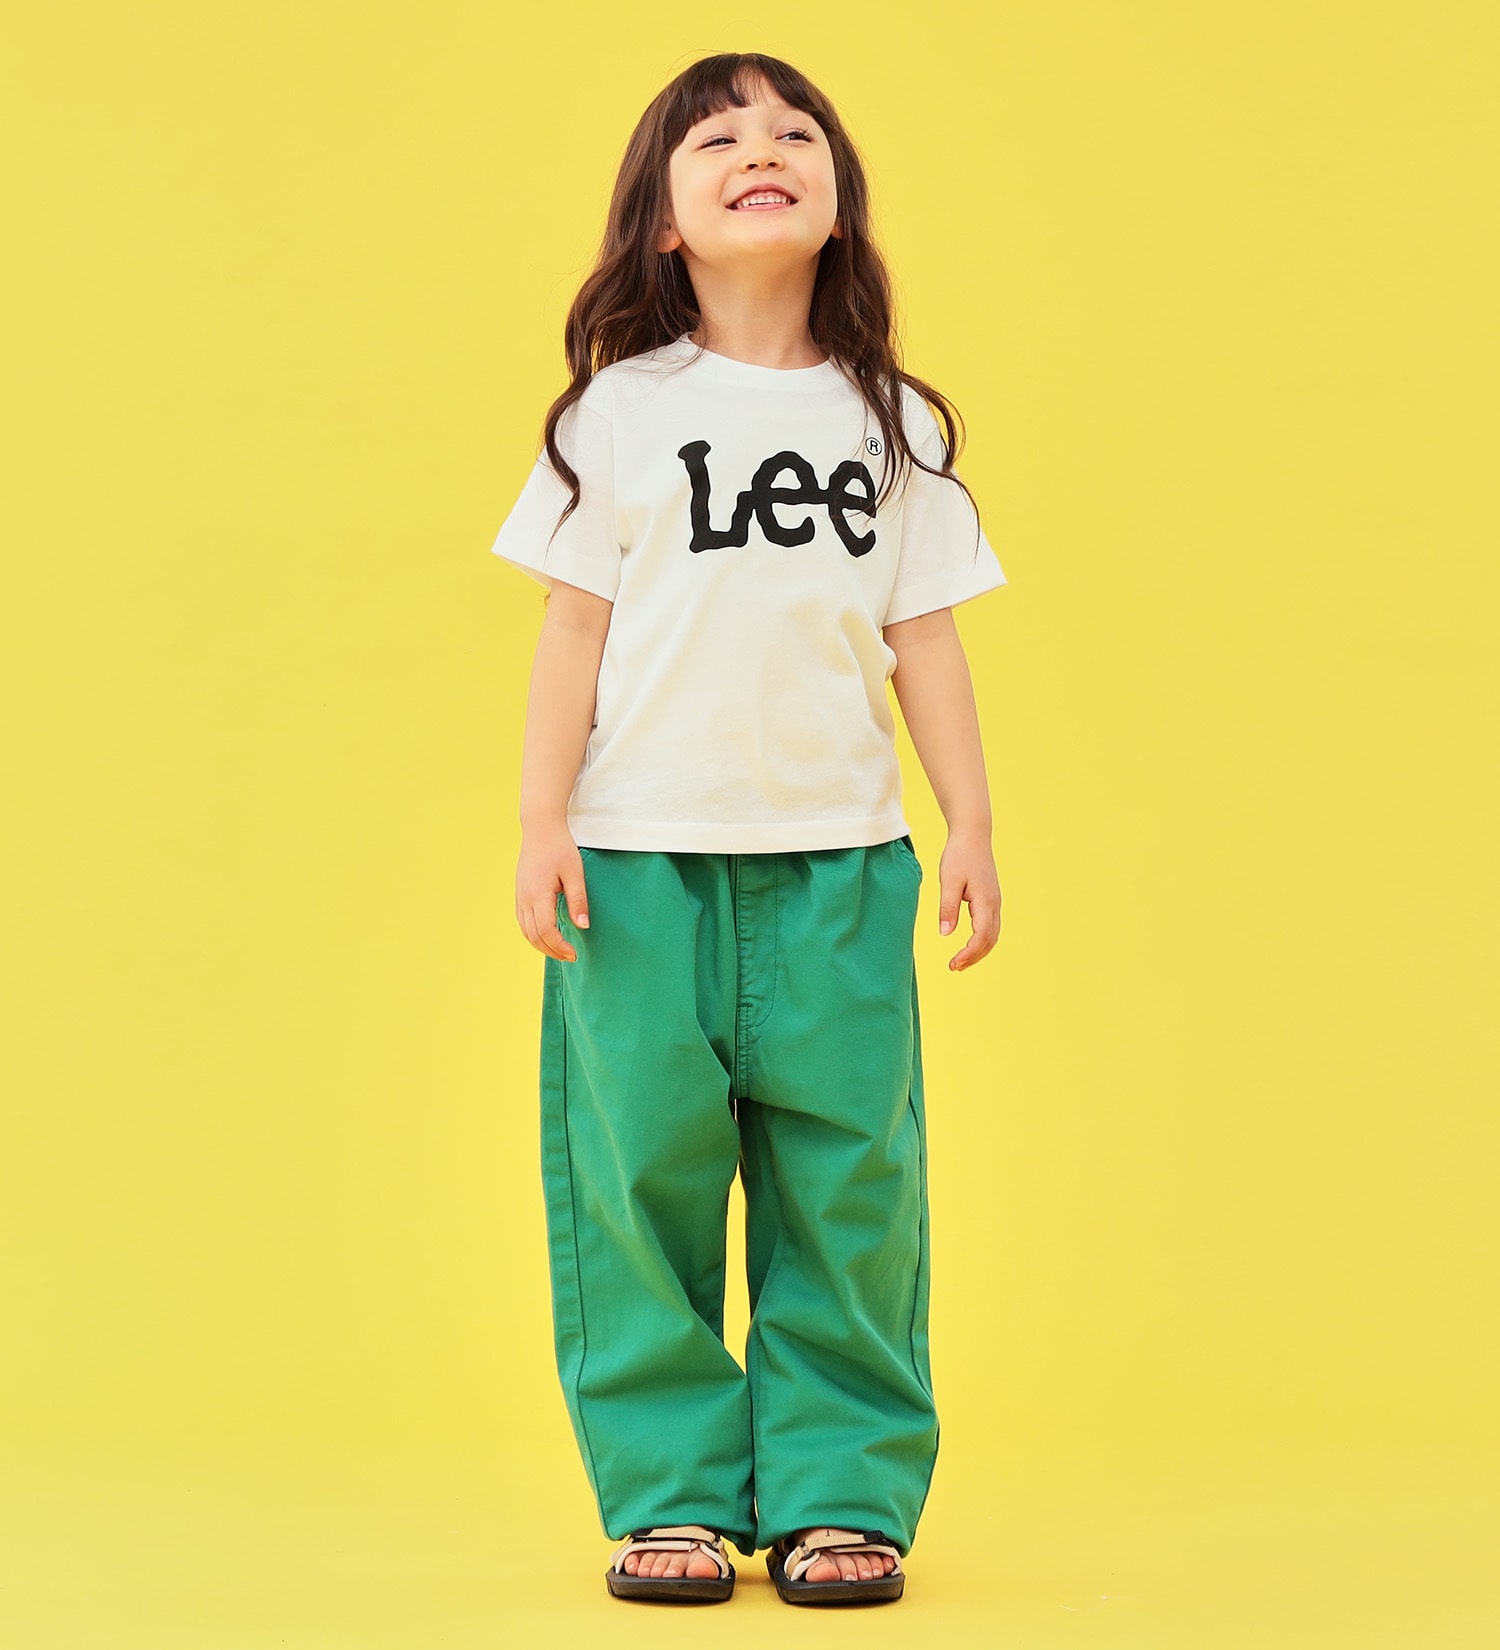 Lee(リー)の【1サイズでカバーできる】キッズ FLeeasy イージーパンツ|パンツ/パンツ/キッズ|グリーン